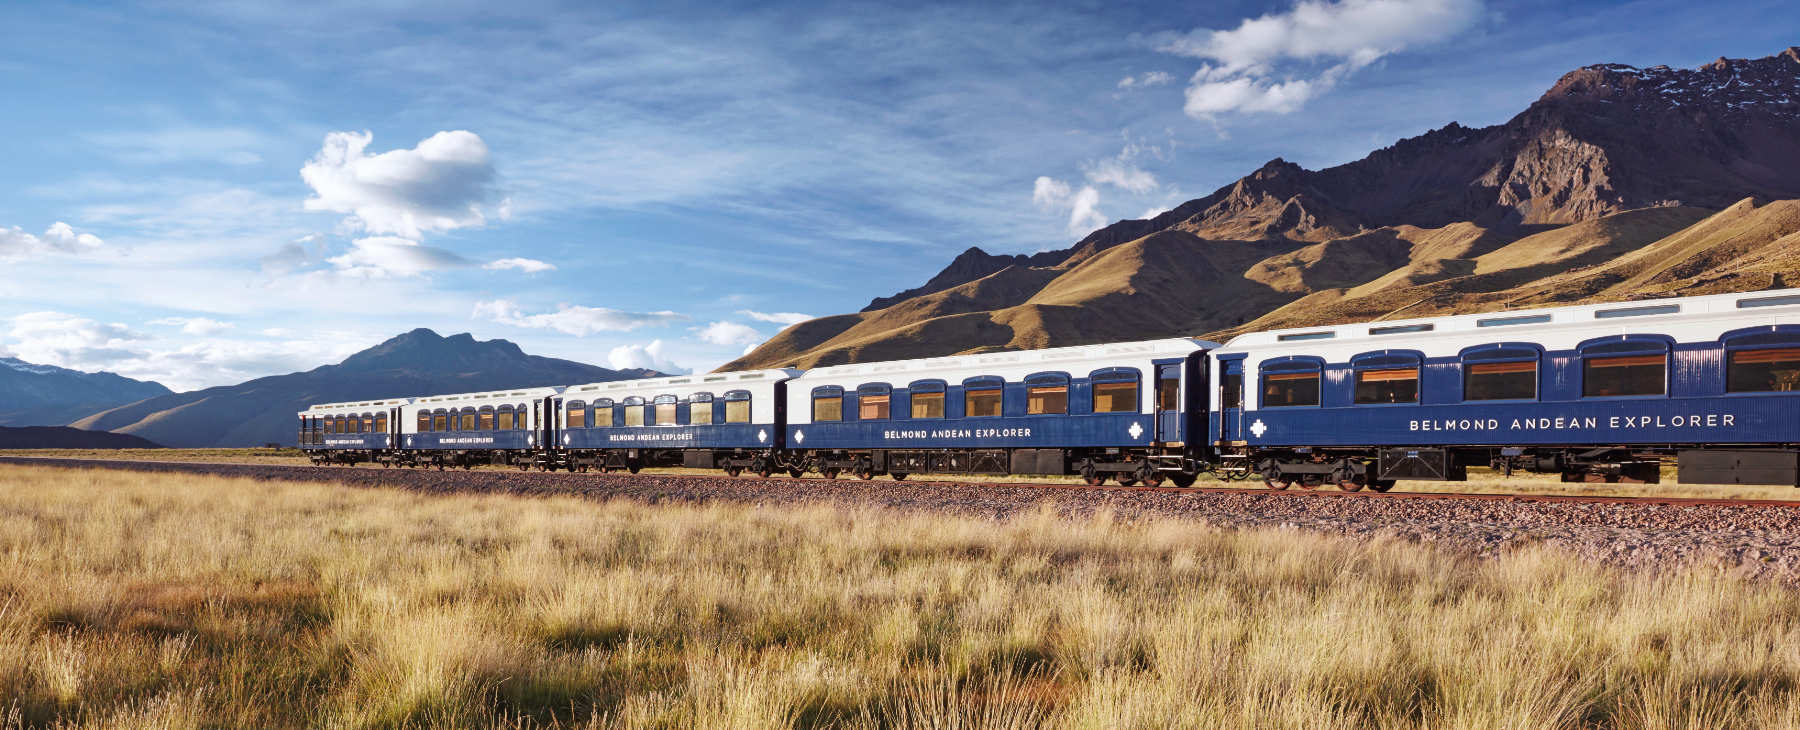 Luxusreise Zug Peru Belmond Andean Explorer Route 1